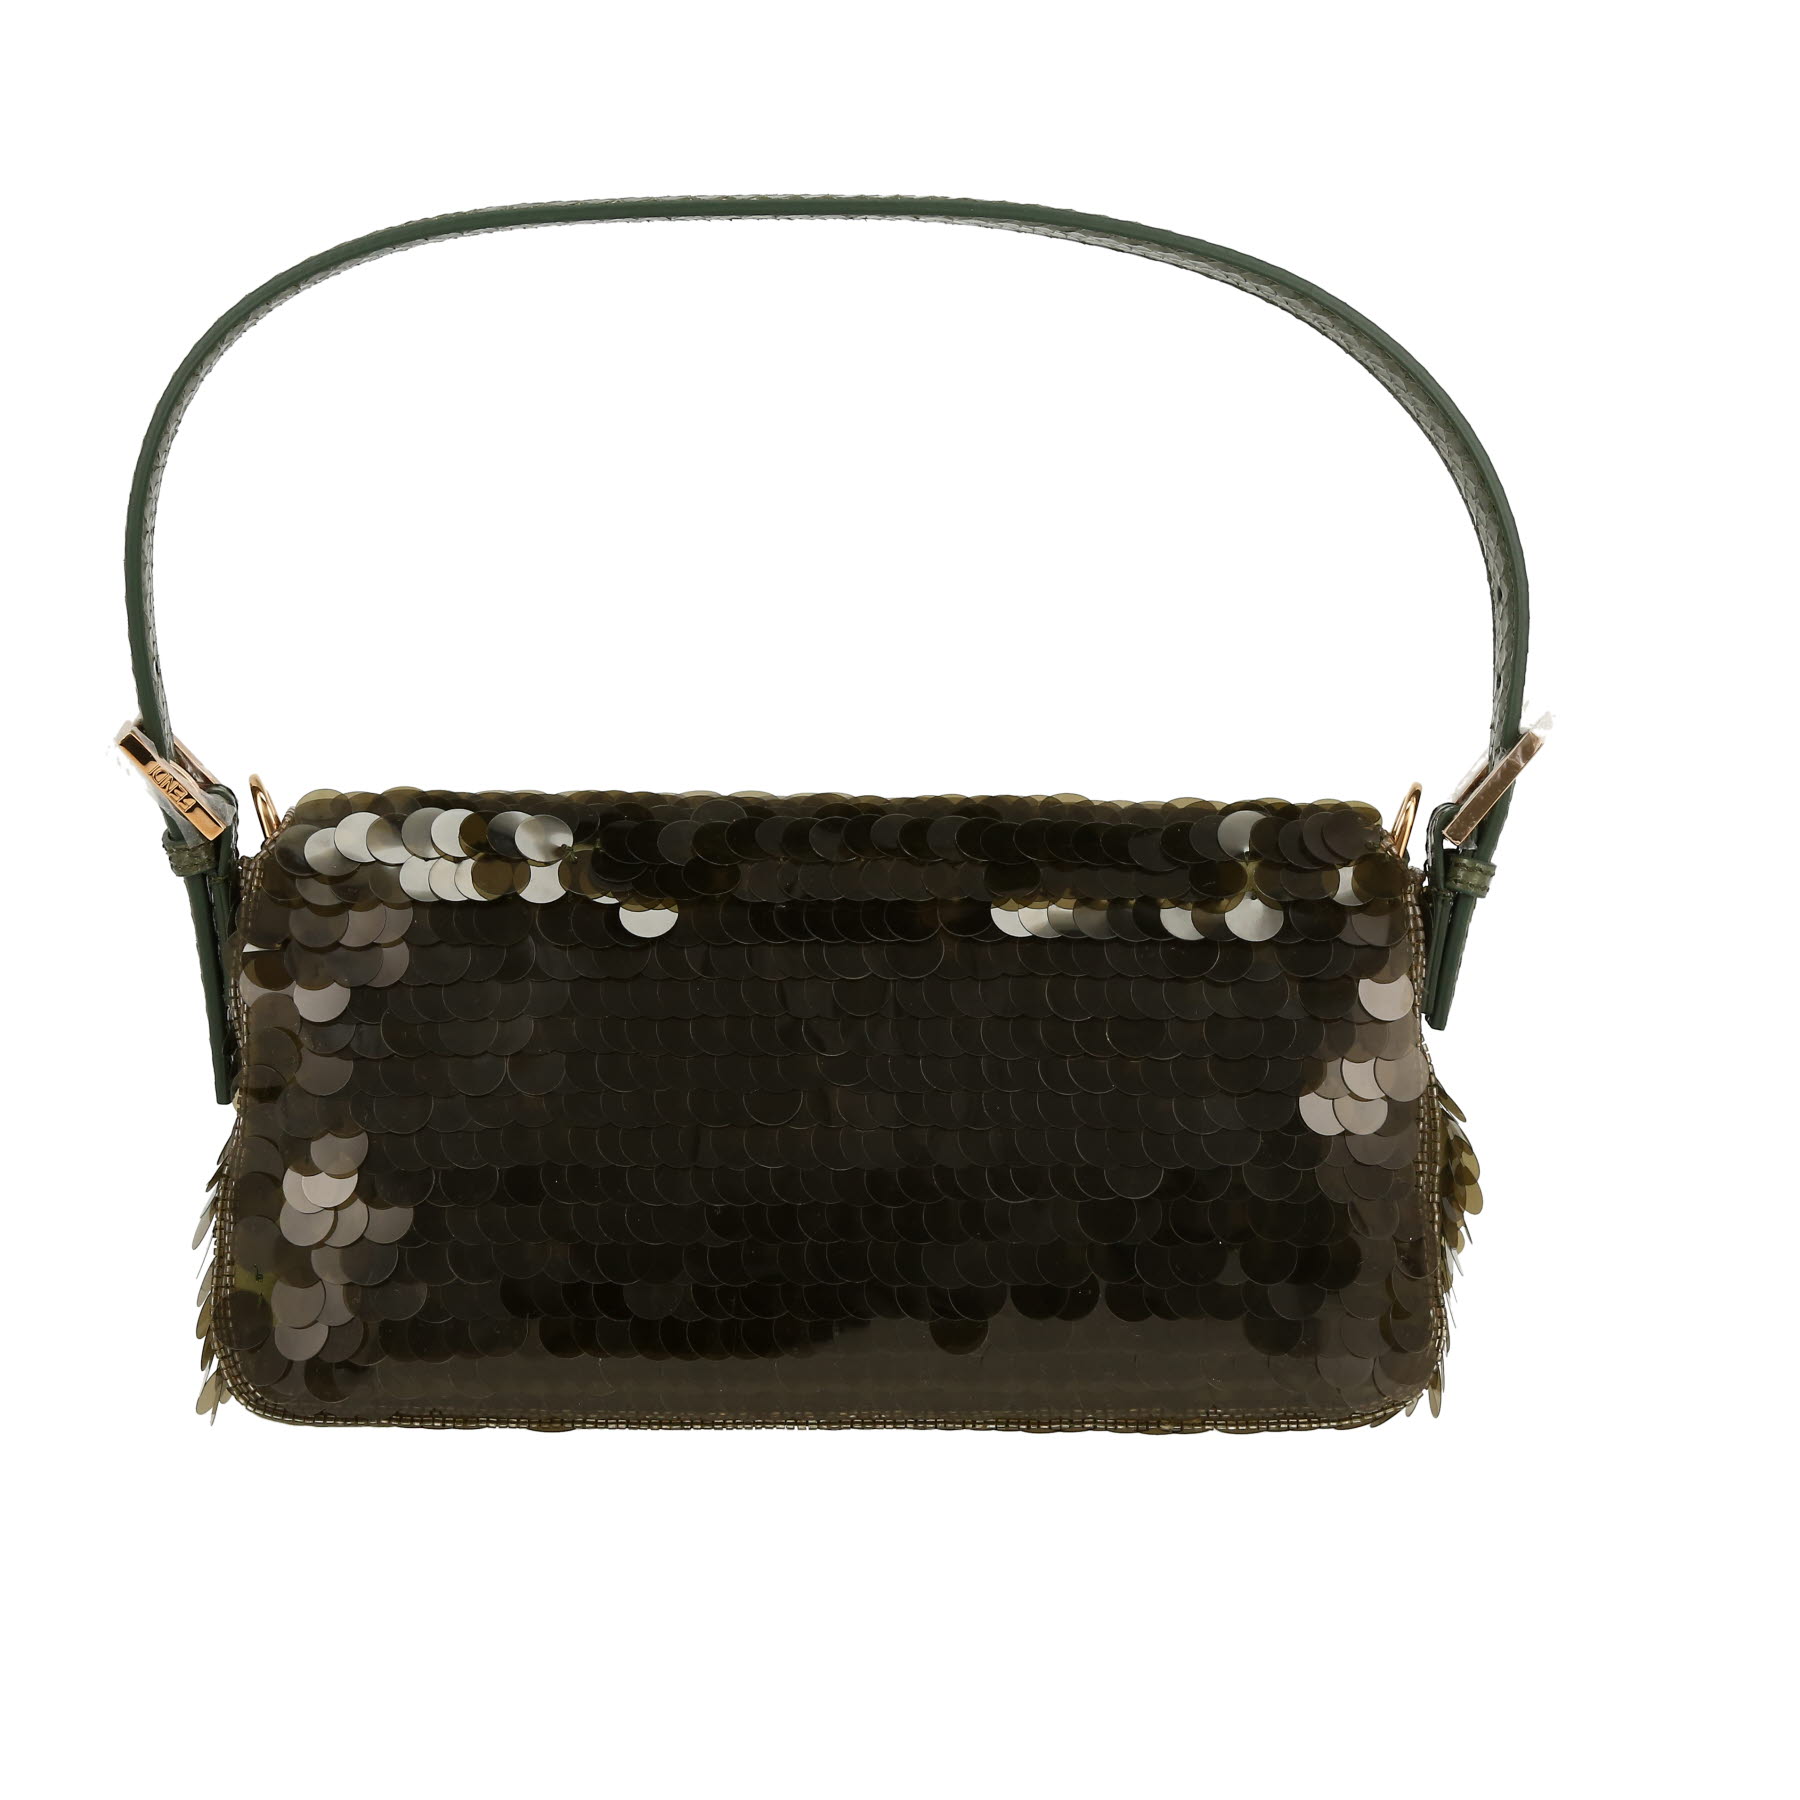 Baguette Handbag In Khaki Paillette And Python